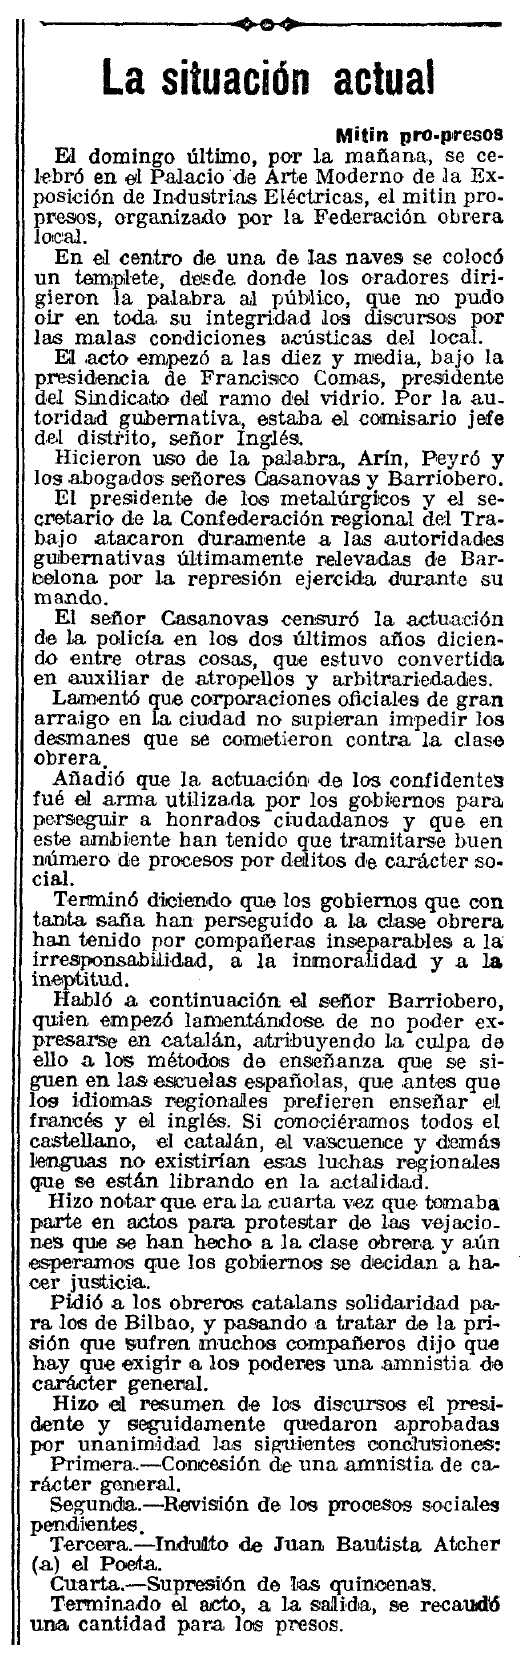 Ressenya del míting apareguda en el diari barceloní "La Vanguardia" del 21 de novembre de 1922